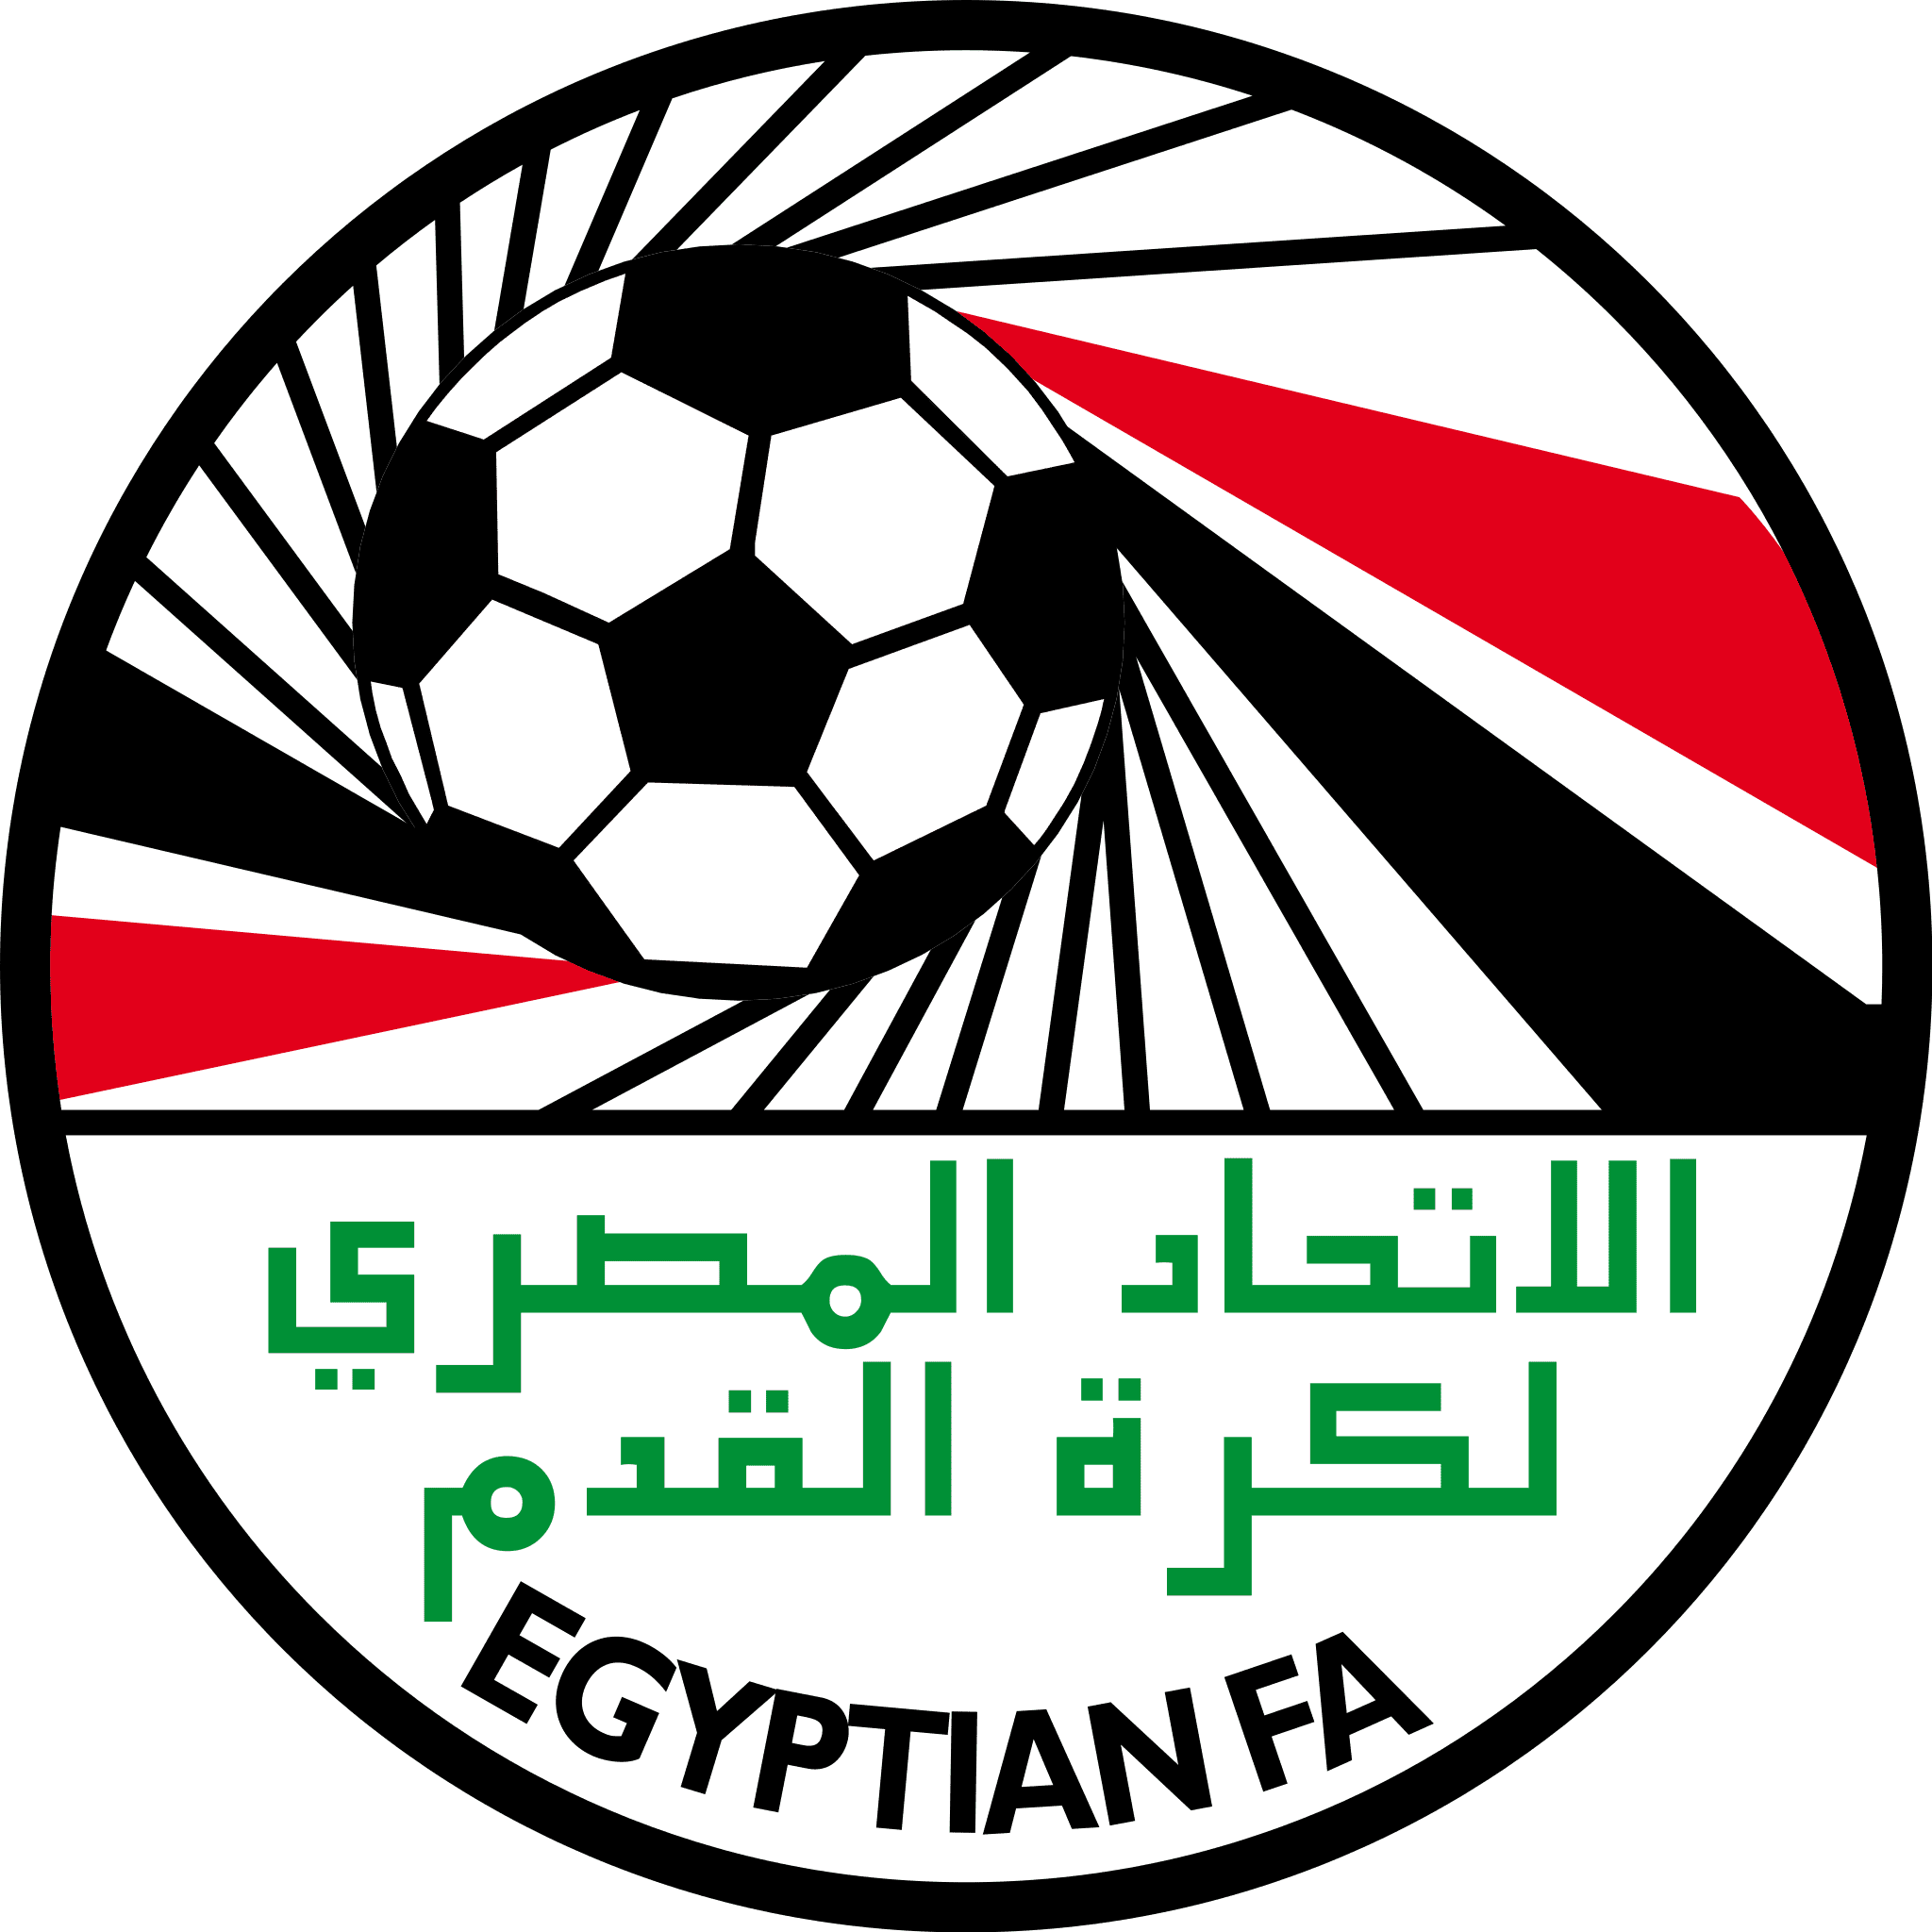 جميع صفقات فرق الدوري المصري موسم 2022_2023 حتى الآن